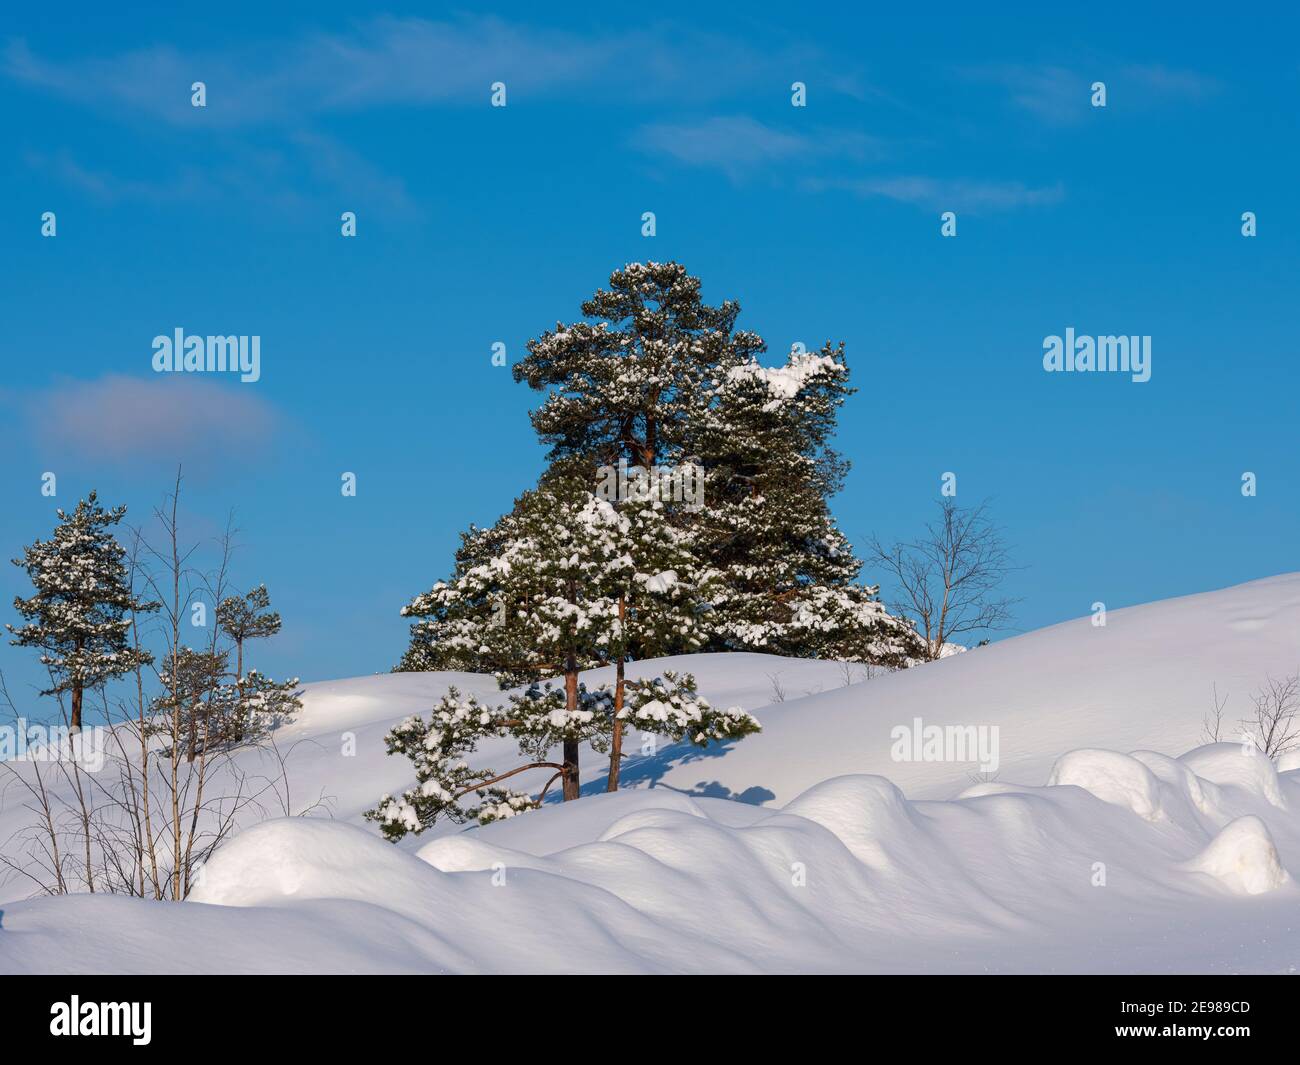 Helsinki / Finlandia - 3 FEBBRAIO 2021: Bella neve e tranquilla scena invernale con le rive innevate e gli alberi di pino intatti Foto Stock